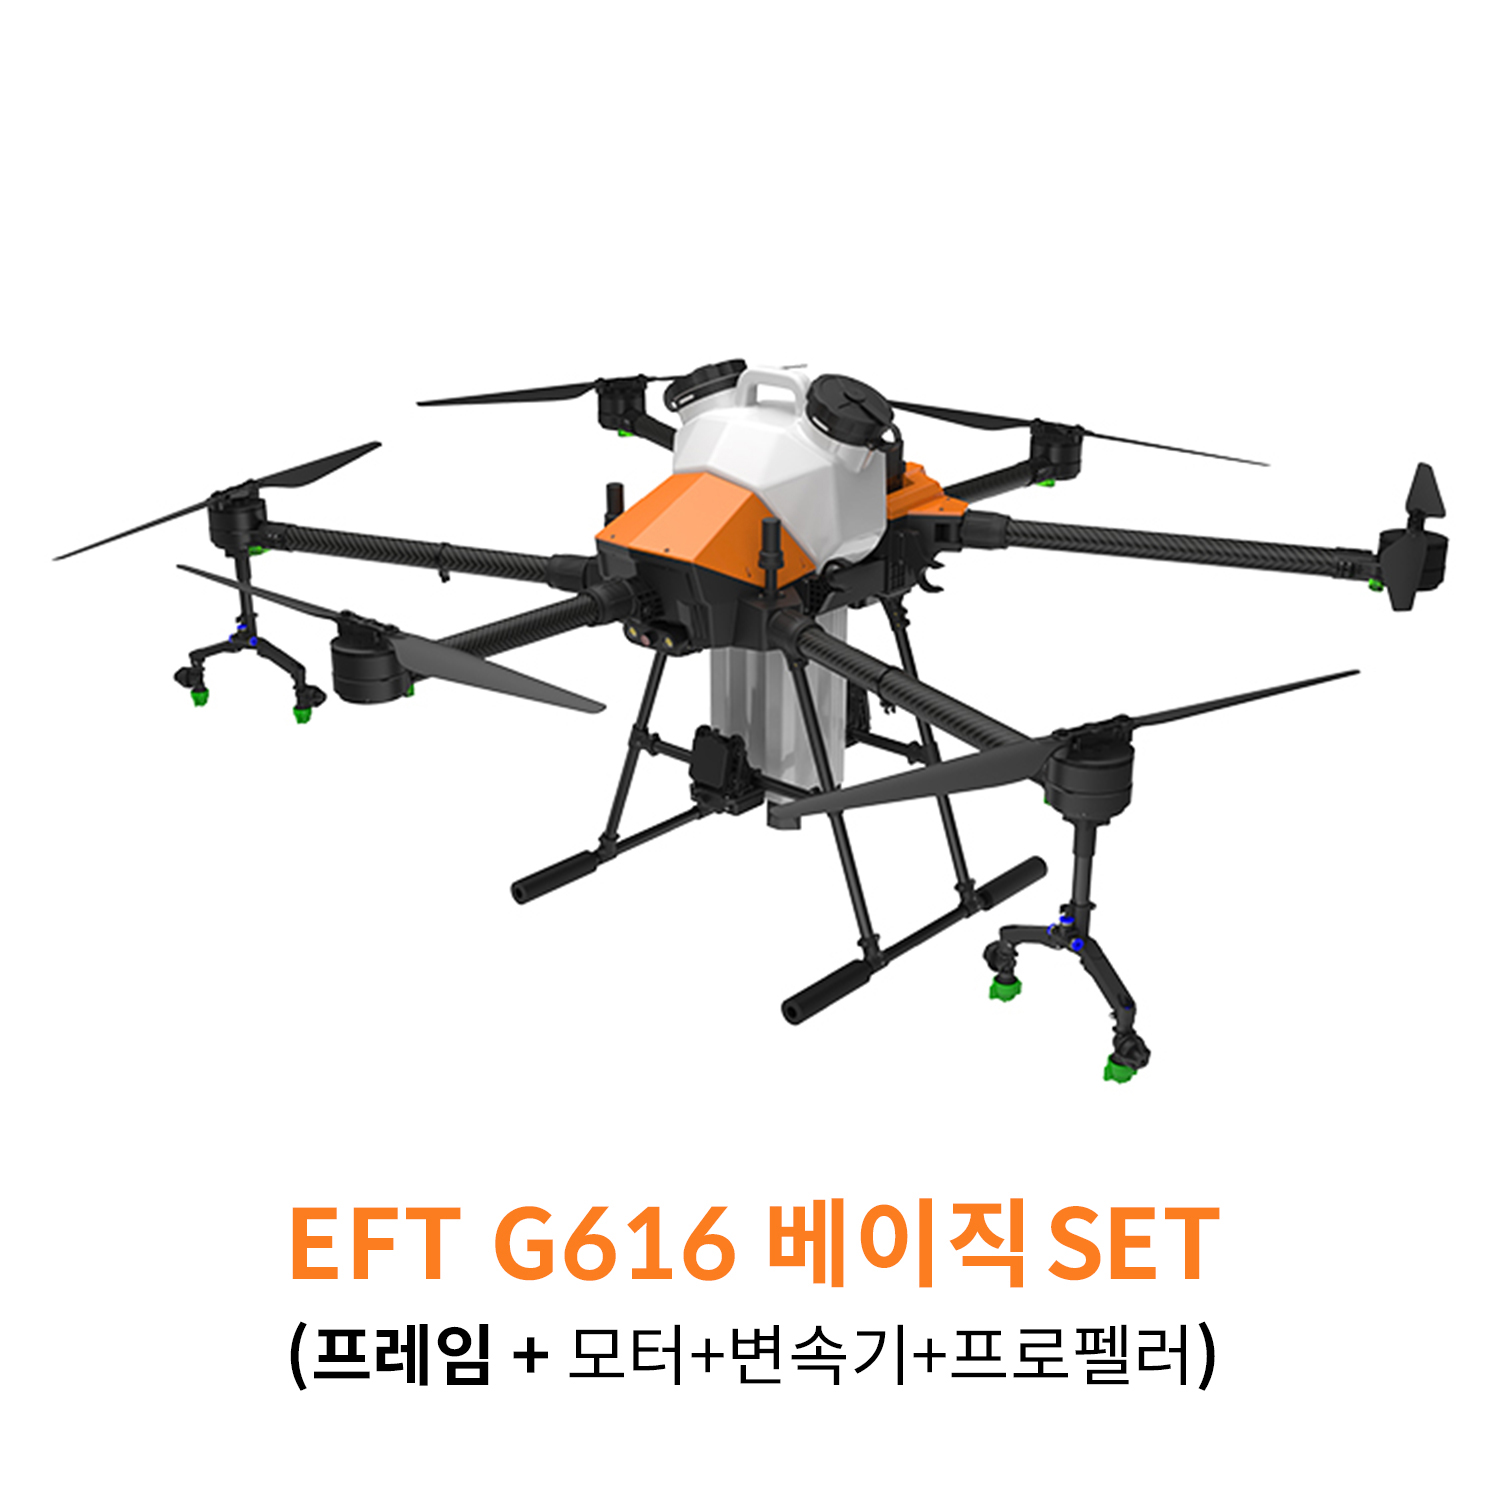 EFT G616 베이직 SET 농업 방제 드론하비윙 x8 파워시스템 탑재 헬셀